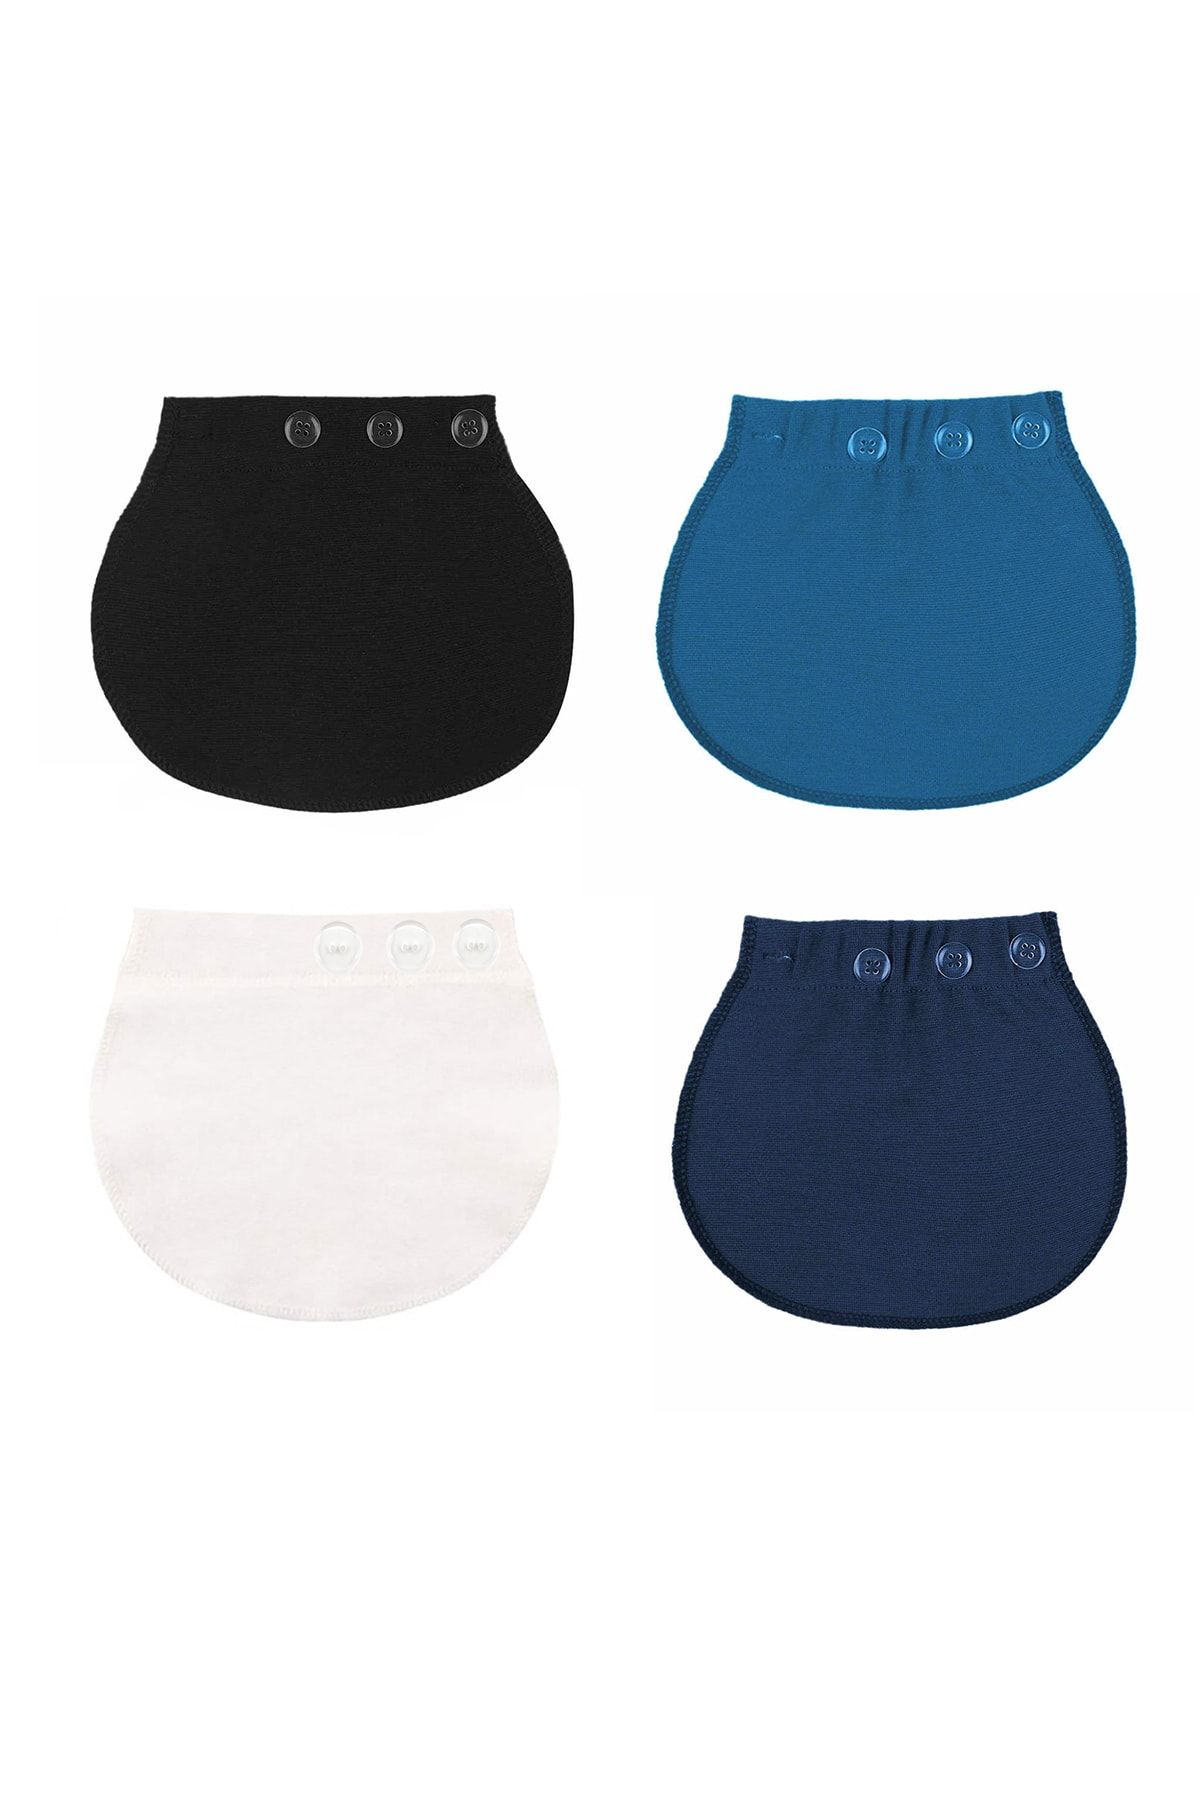 Pimobile Hamile Pantolonu Bel Genişletici-kadınlar Için Pantolon Genişletici Mavi-siyah-beyaz-lacivert 4 Renk